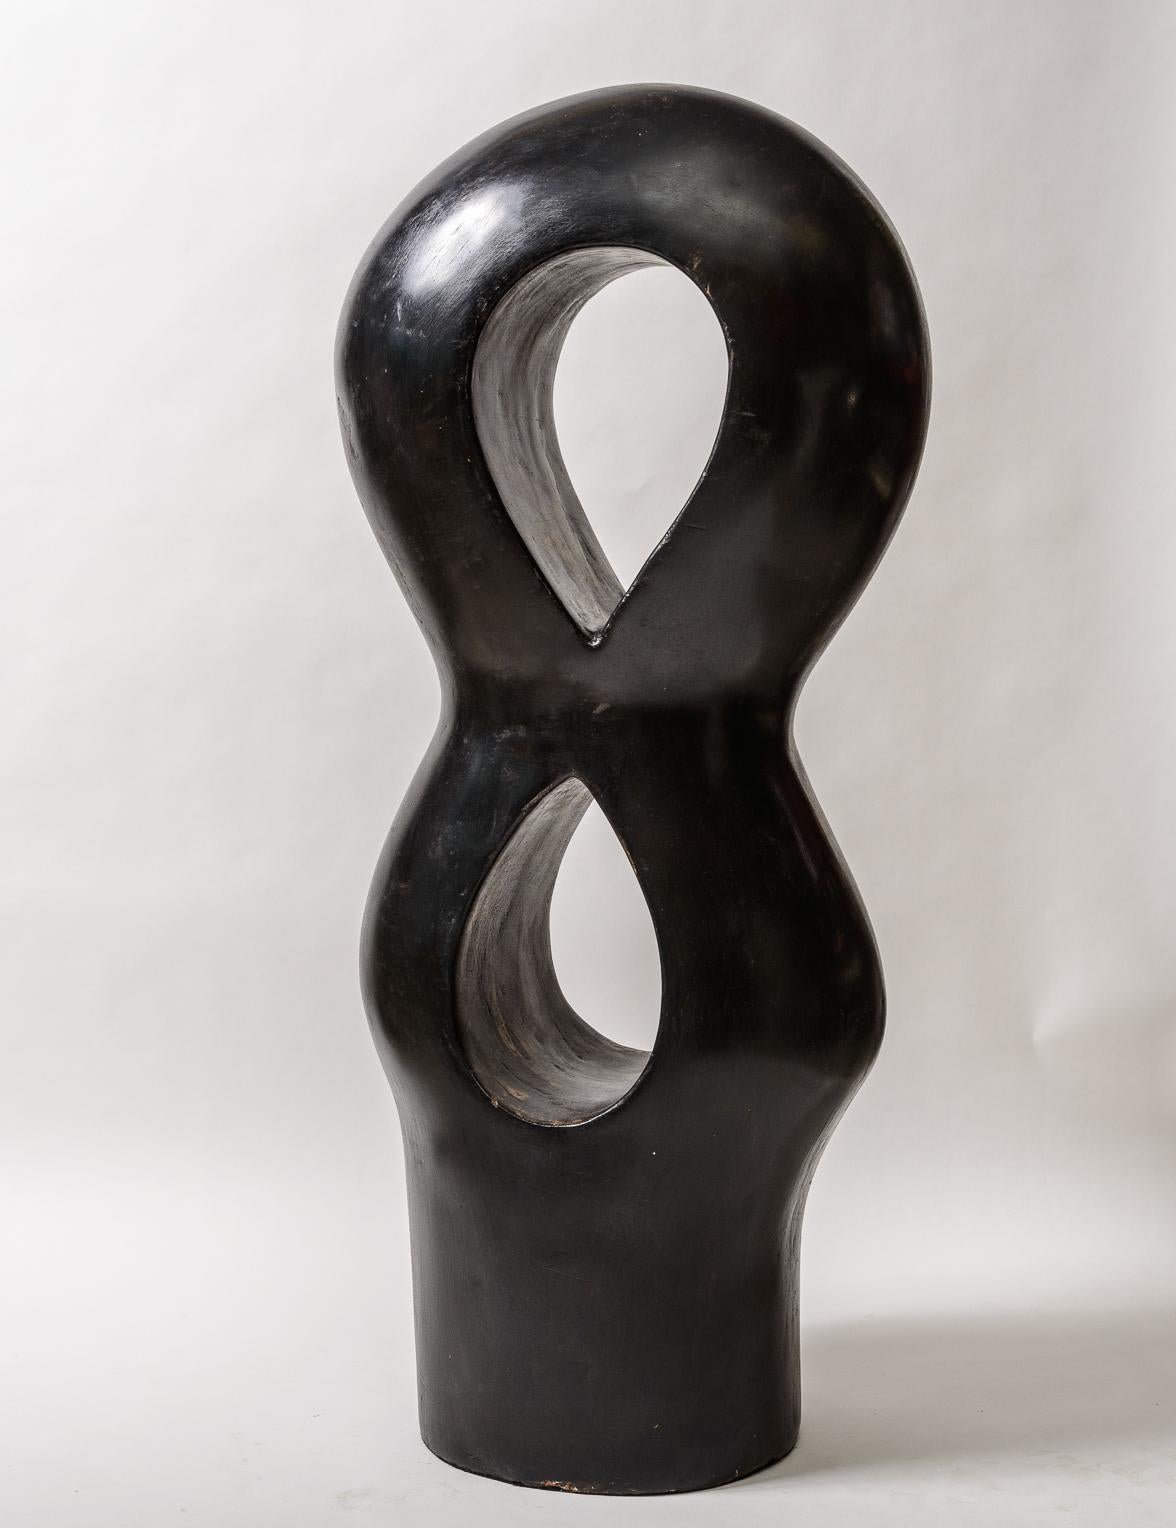 Eine große Totem-Skulptur aus Keramik.
Vielfarbige Oberfläche in Schwarz mit Bereichen in Tan/Braun.
Primitiv und doch modern - siehe das Foto mit der Skulptur neben einer Cola-Dose. 
um Ihnen ein Gefühl für den Maßstab zu geben